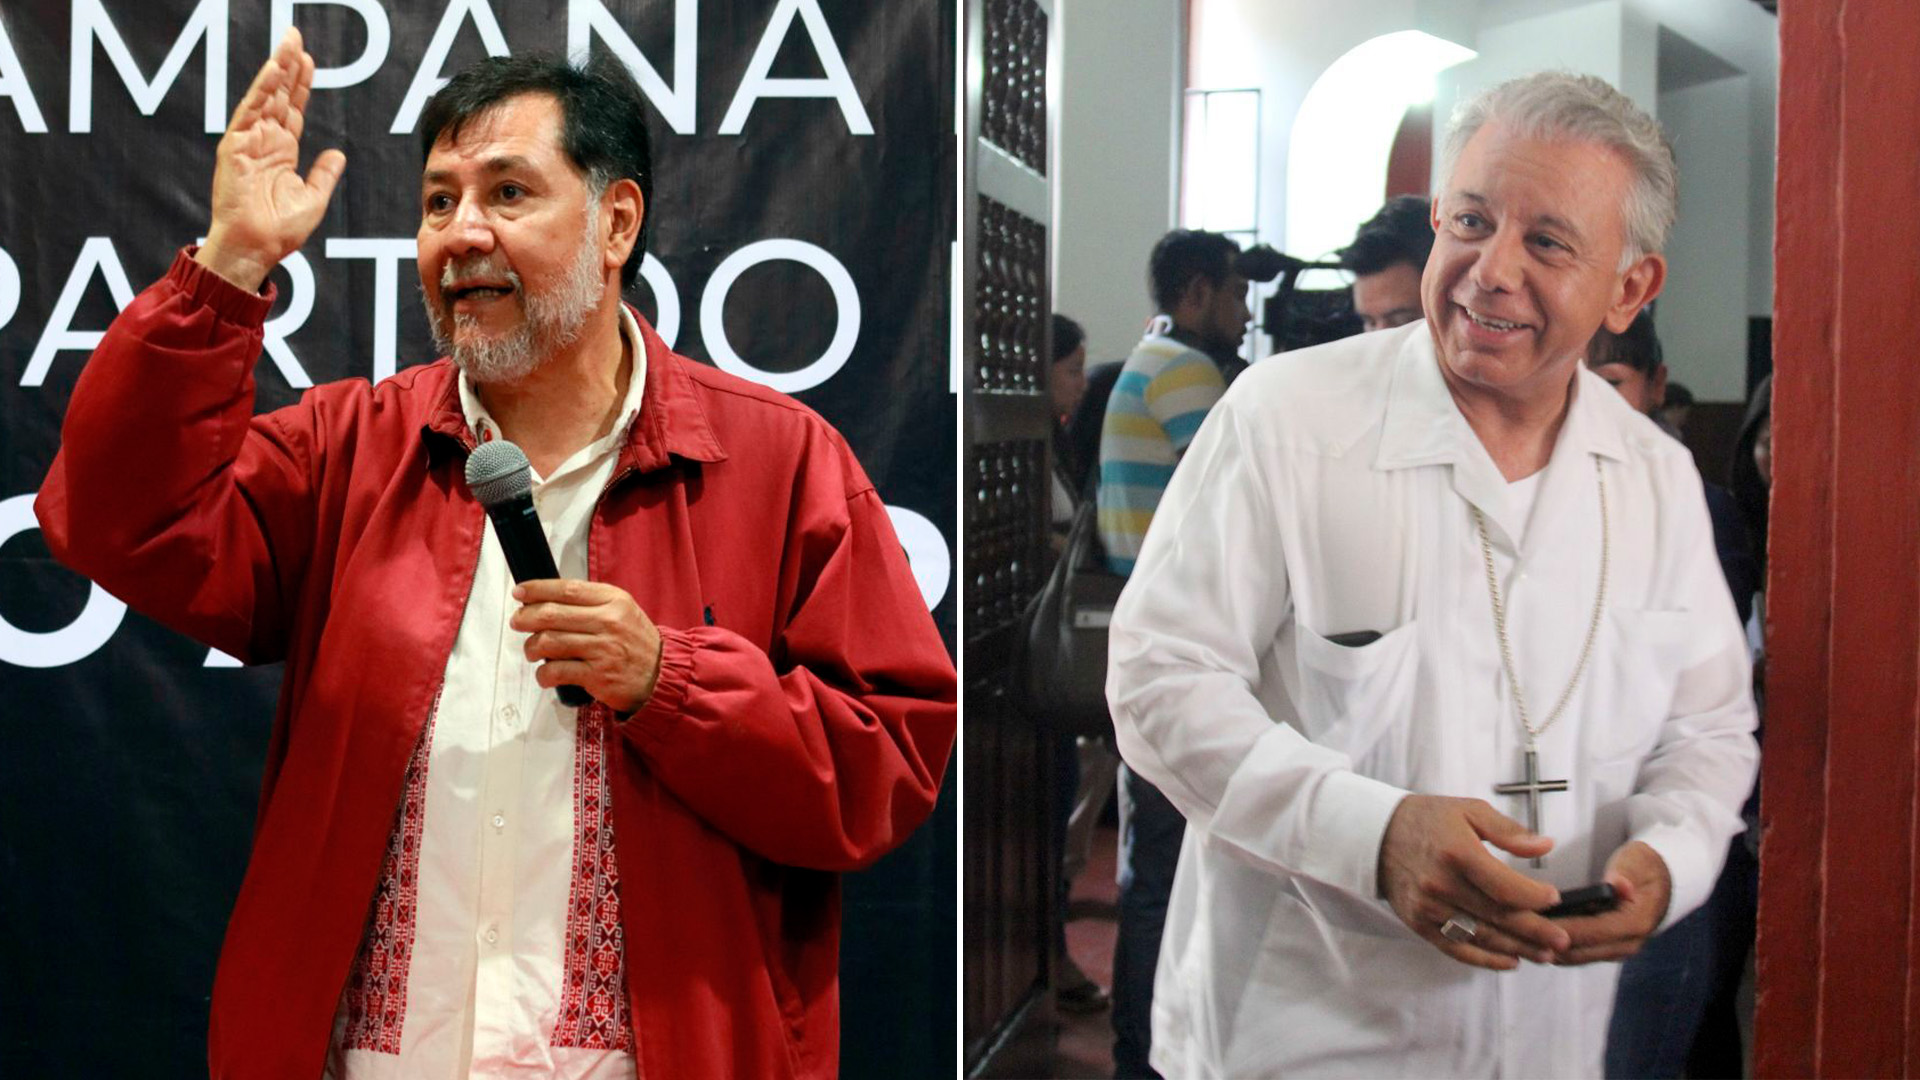 Noroña le dijo al obispo de Cuernavaca que mejor solucione el problema de pederastia en la iglesia (Fotos: Cuartoscuro)